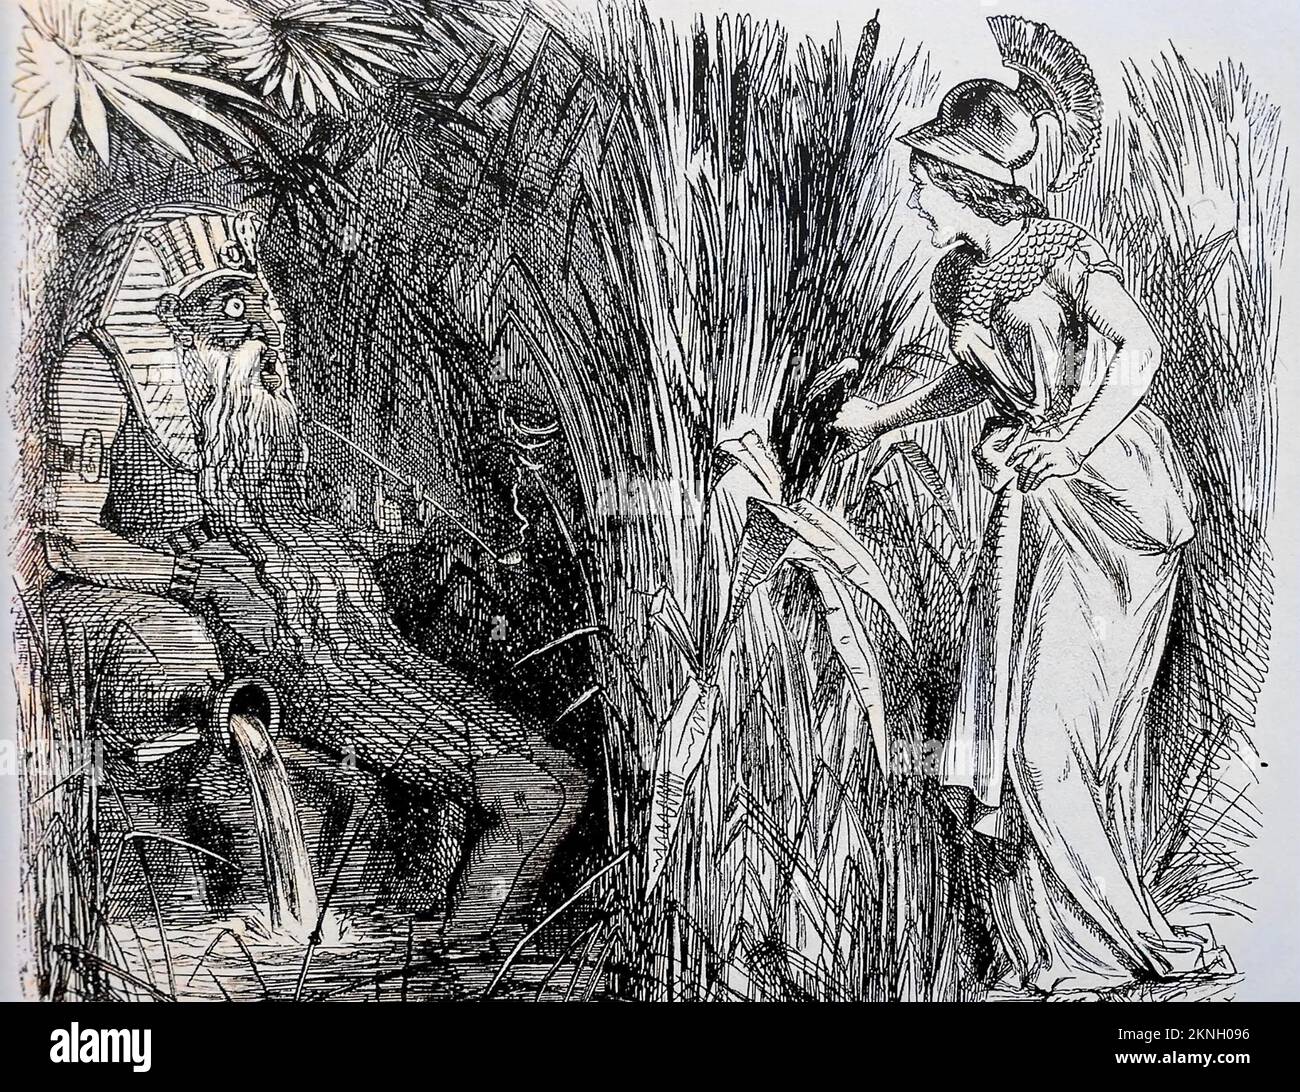 DÉCOUVERTE DE LA SOURCE DU NIL une caricature de 1857 montrant Britannia trouver la source légendaire qui a été attribuée à un pichet d'eau caché. Banque D'Images